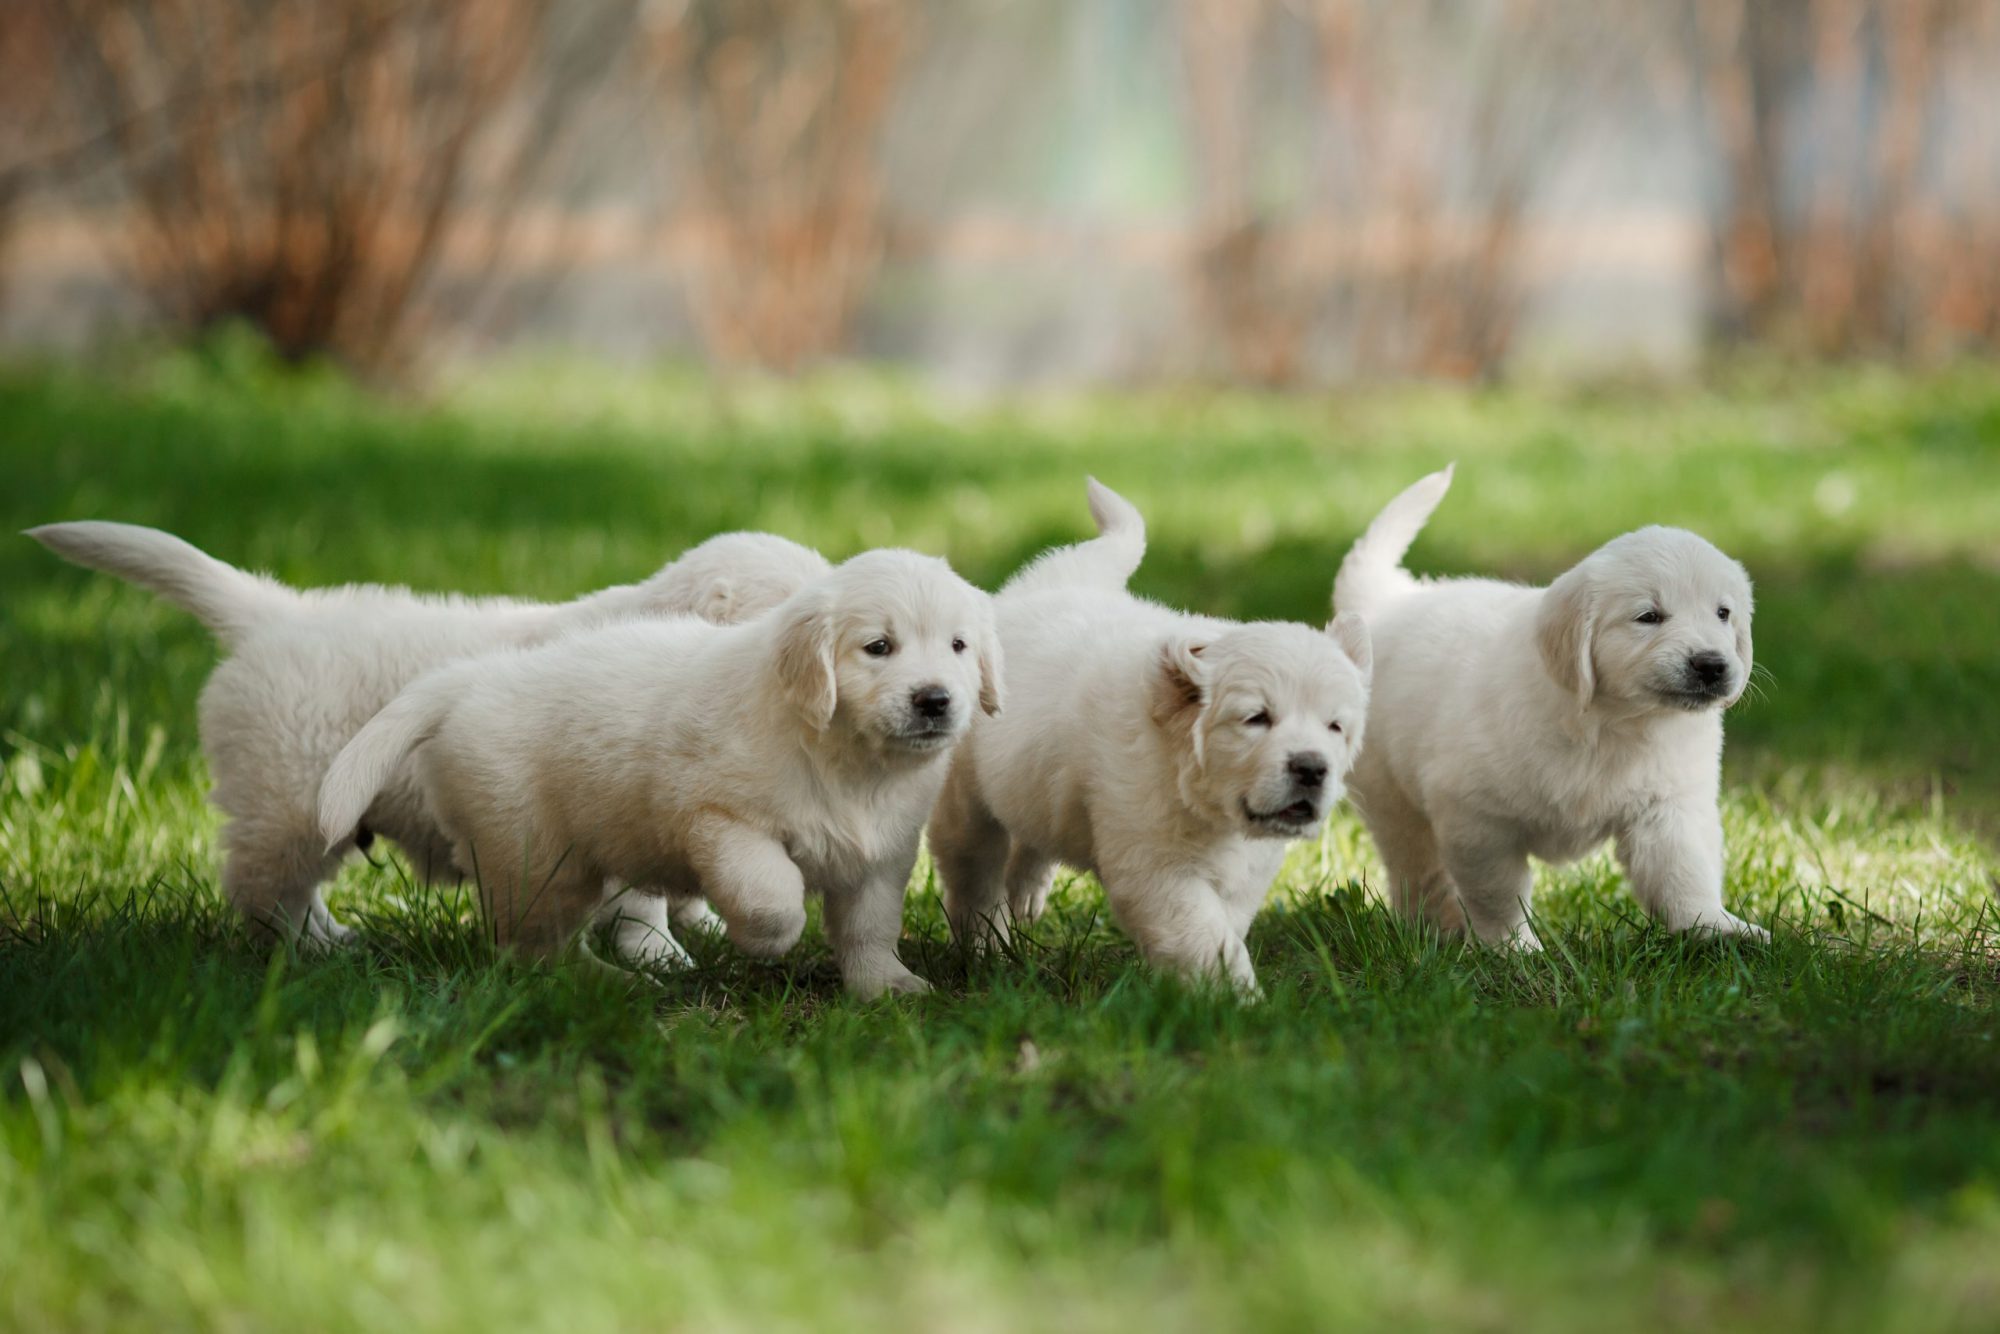 Maak plaats Ciro bewijs Golden retriever pup kopen? Wij vinden een betrouwbare pup voor je! -  FairPet.nl